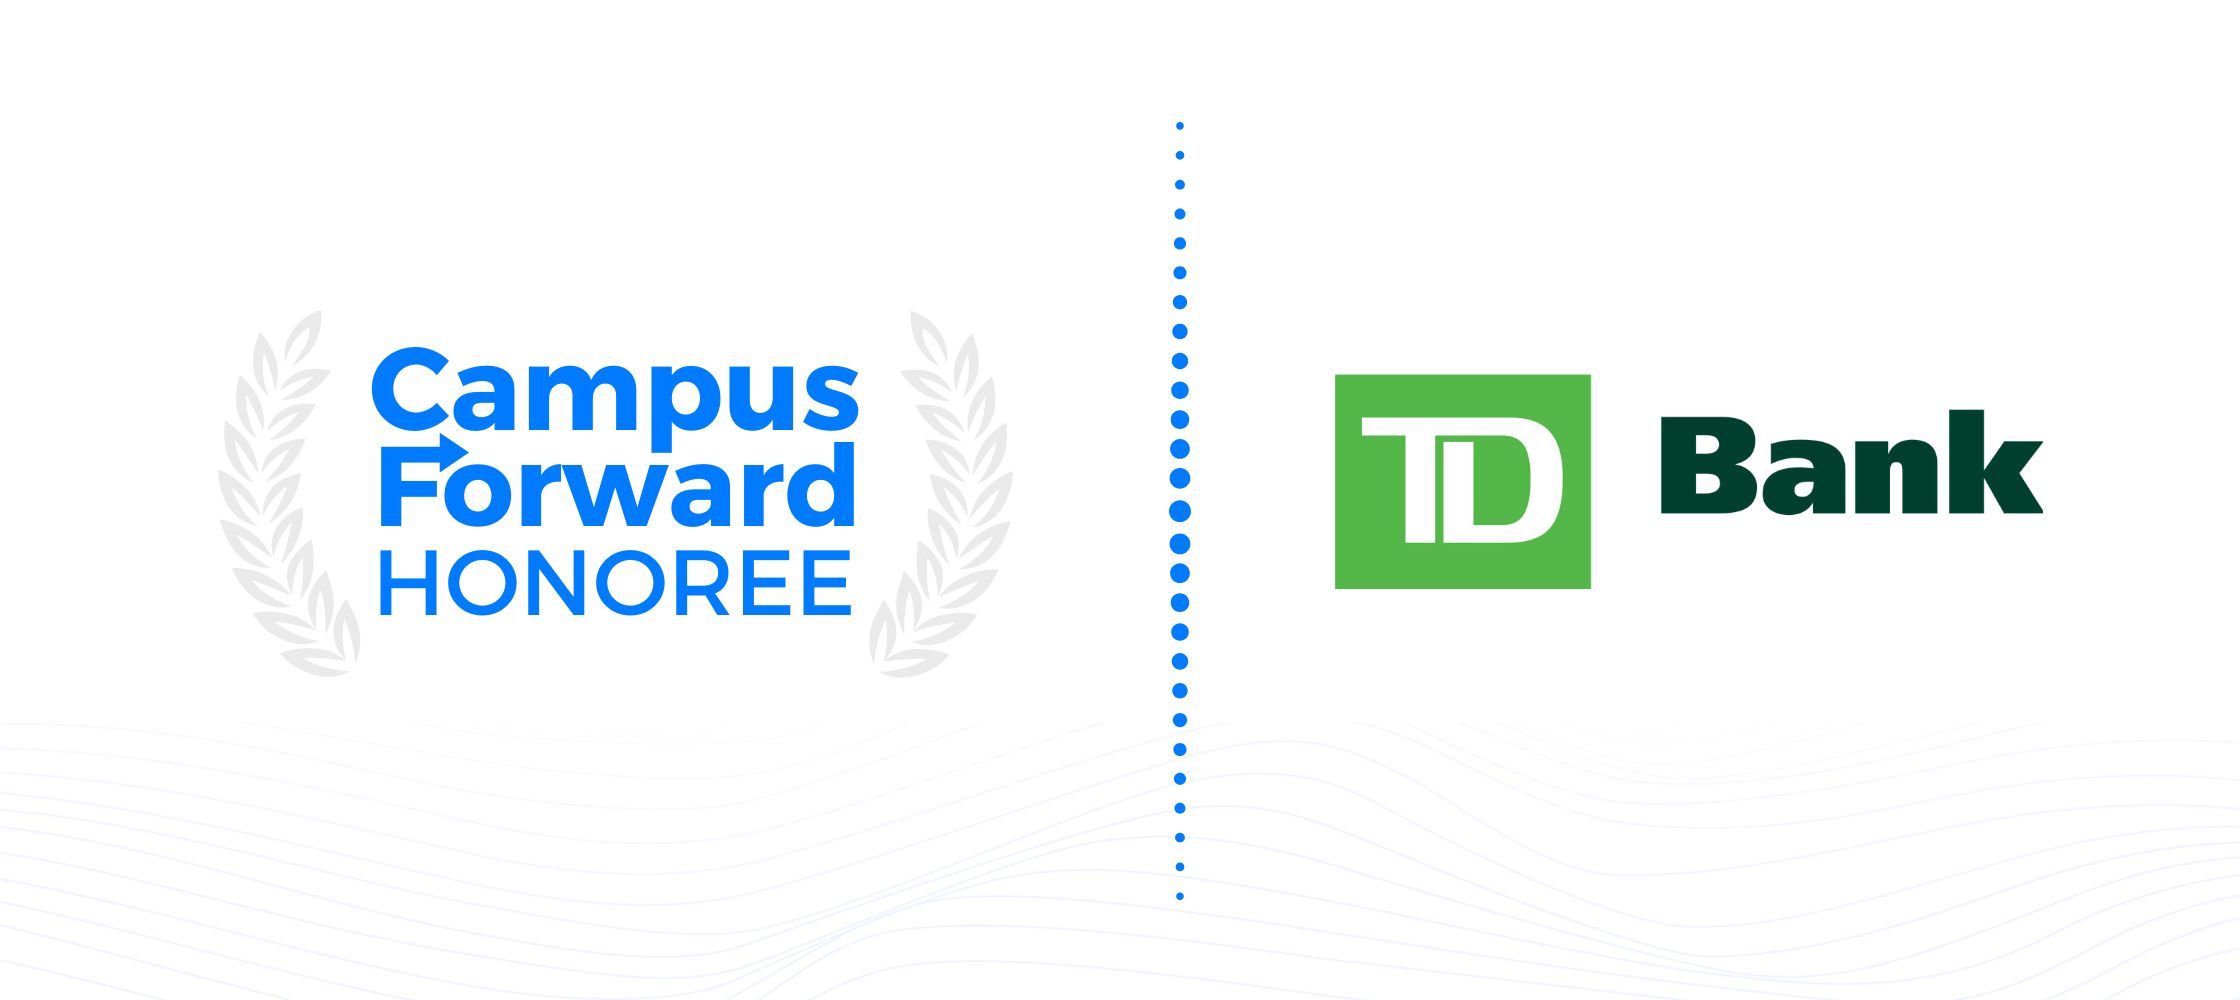 Campus Forward Honoree - TD Bank